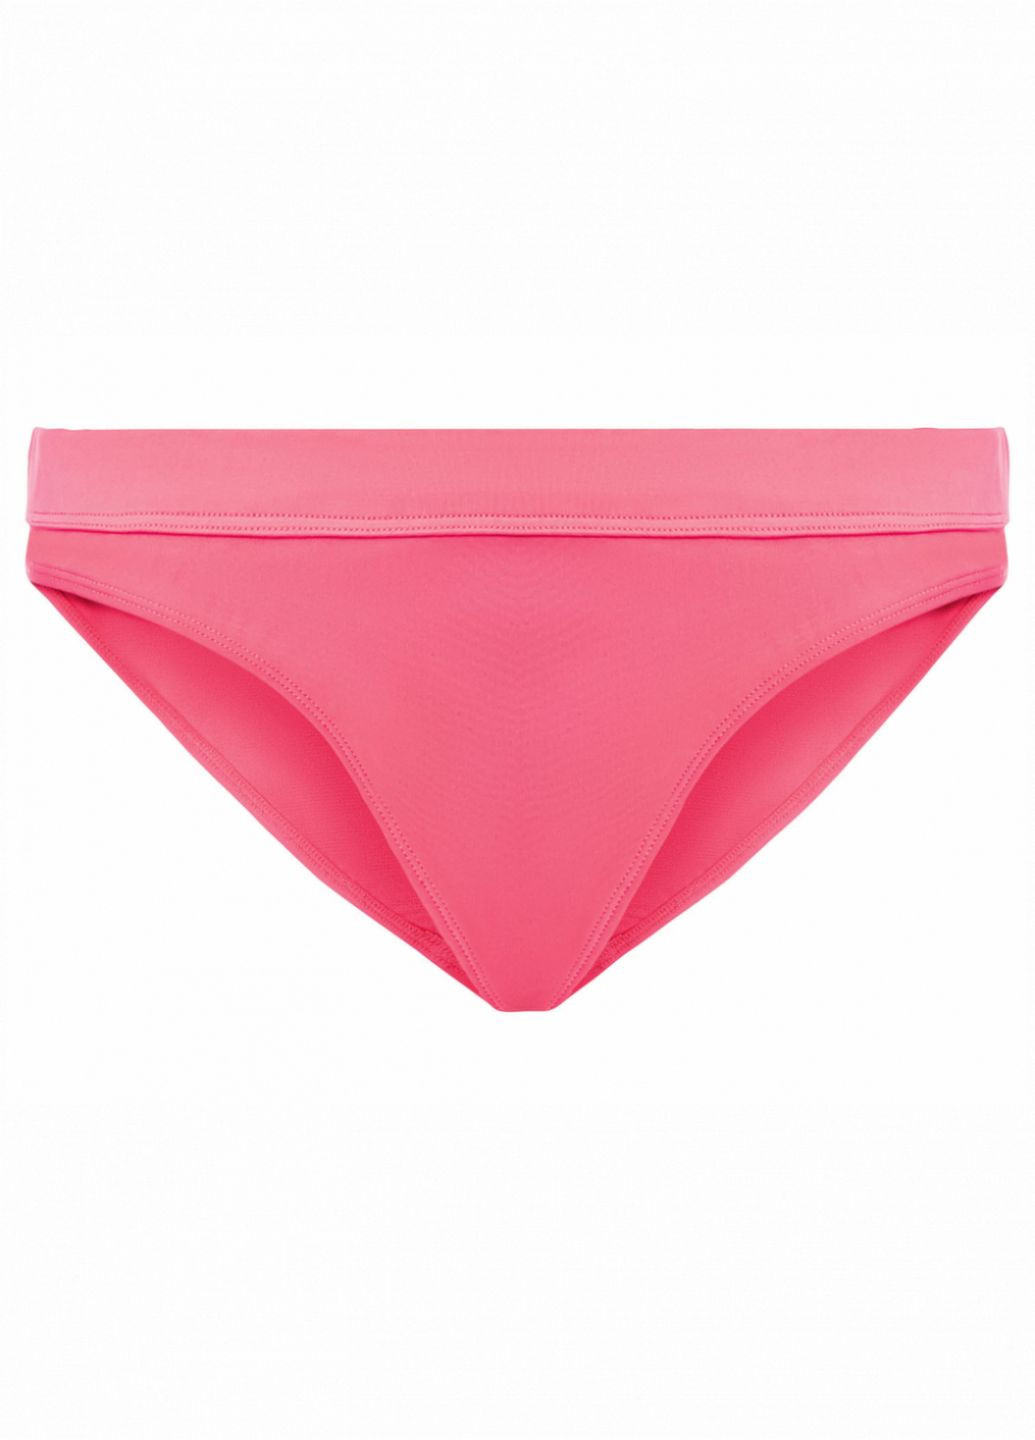 Розовый купальник раздельный на завязках для женщины lycra® 372167 40(m) бикини Esmara С открытой спиной, С открытыми плечами